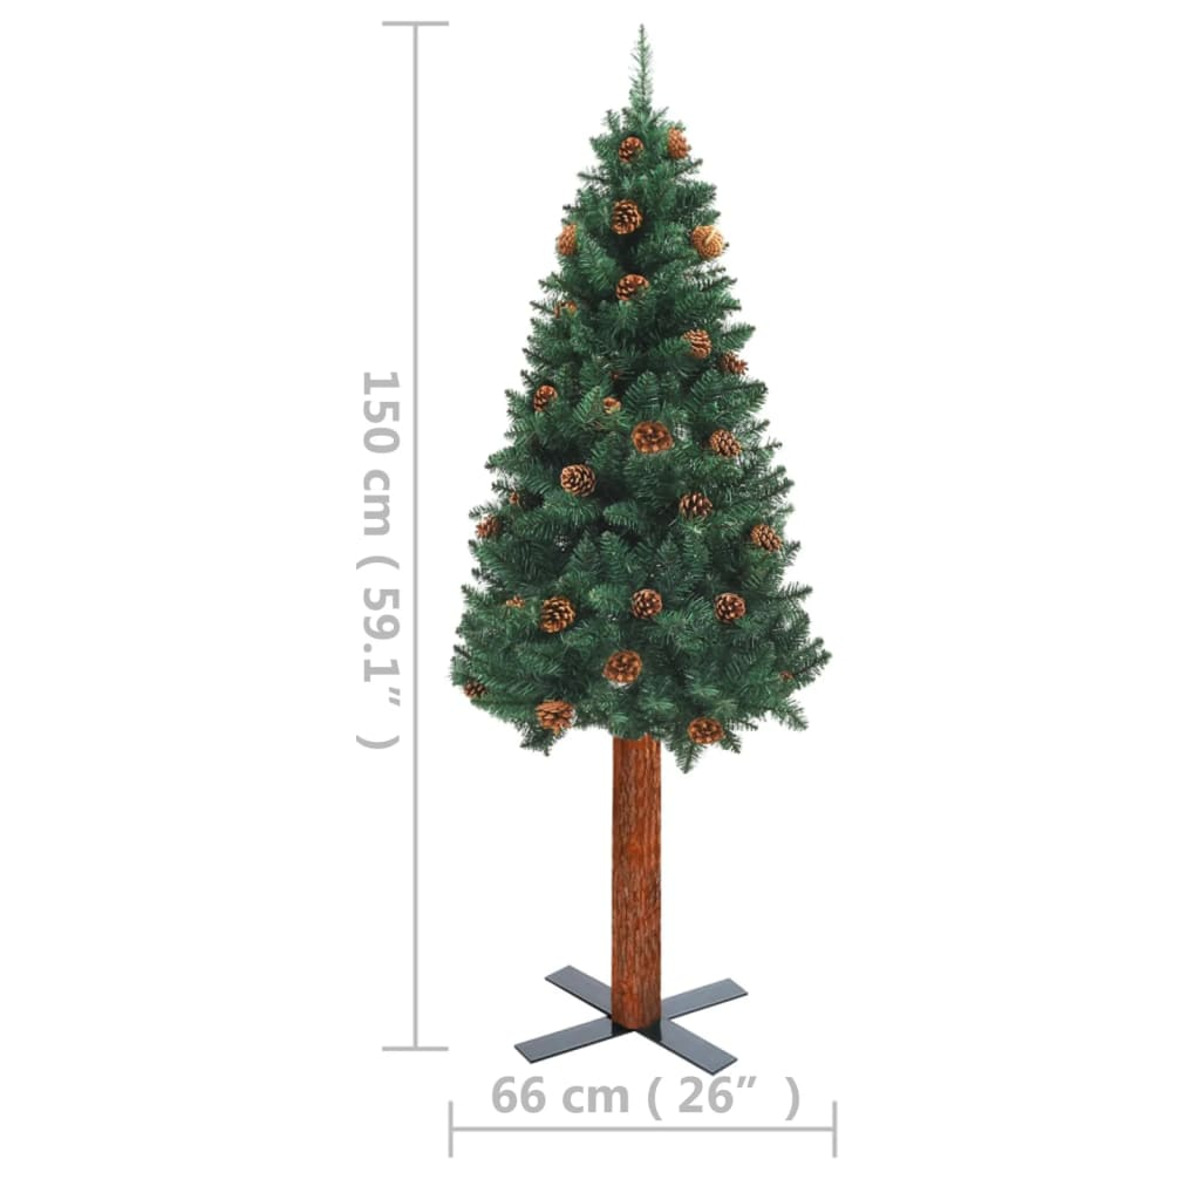 VIDAXL 3077759 Weihnachtsbaum